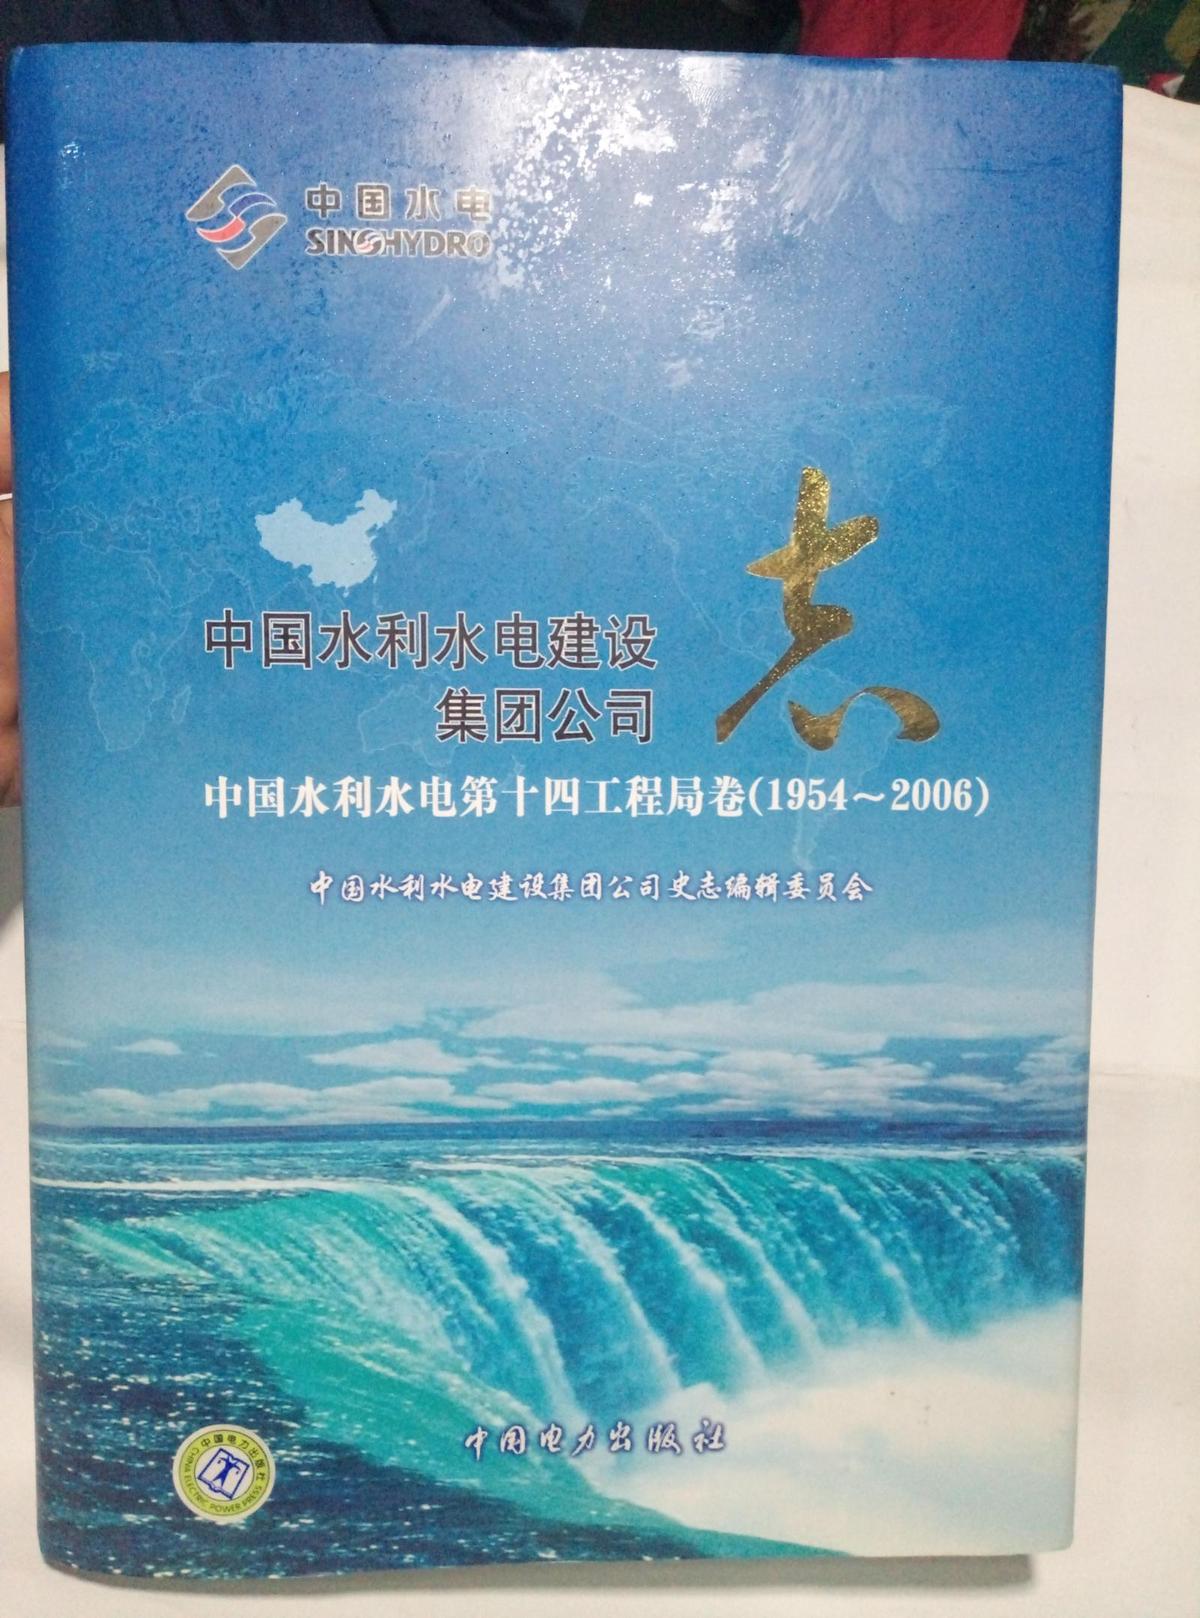 中国水利水电建设集团公司志